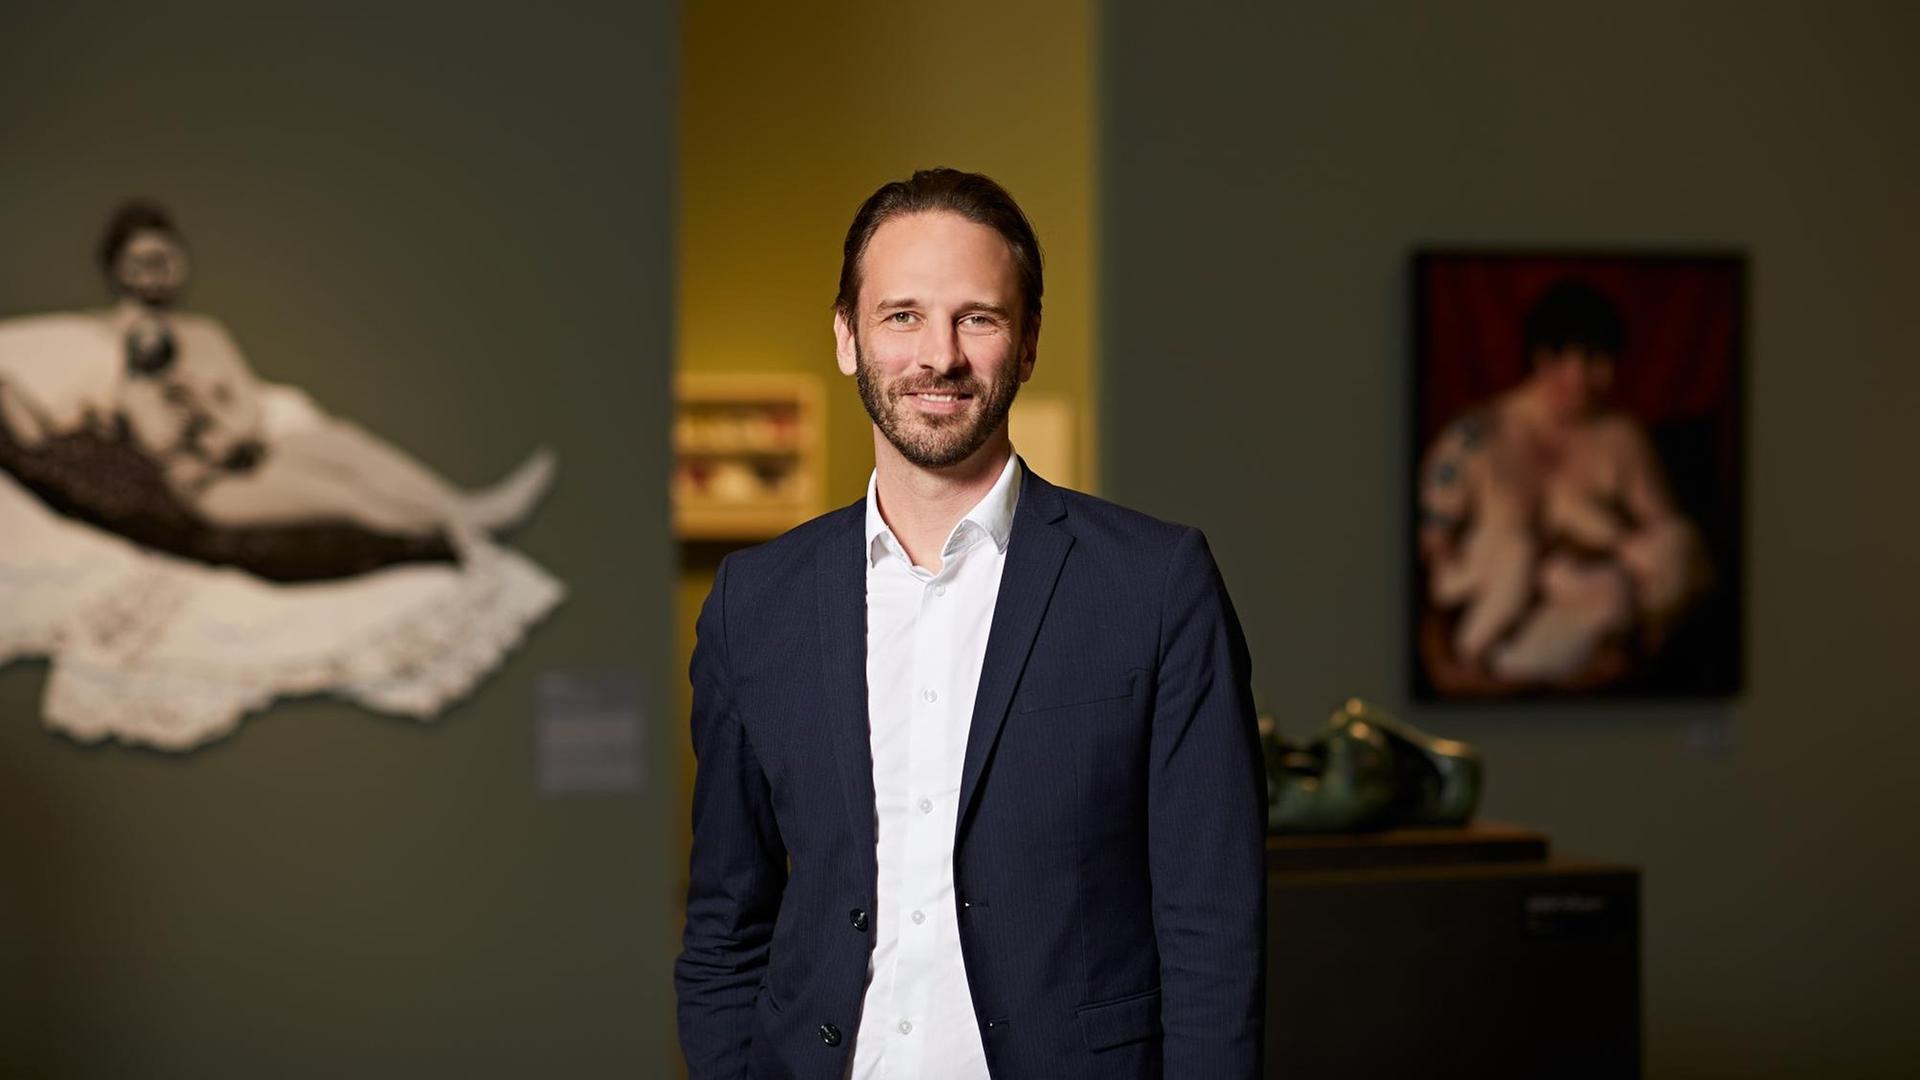 Der Direktor der Kunsthalle und Kurator Johan Holten porträtiert in den Räumen der Ausstellung "Mutter".